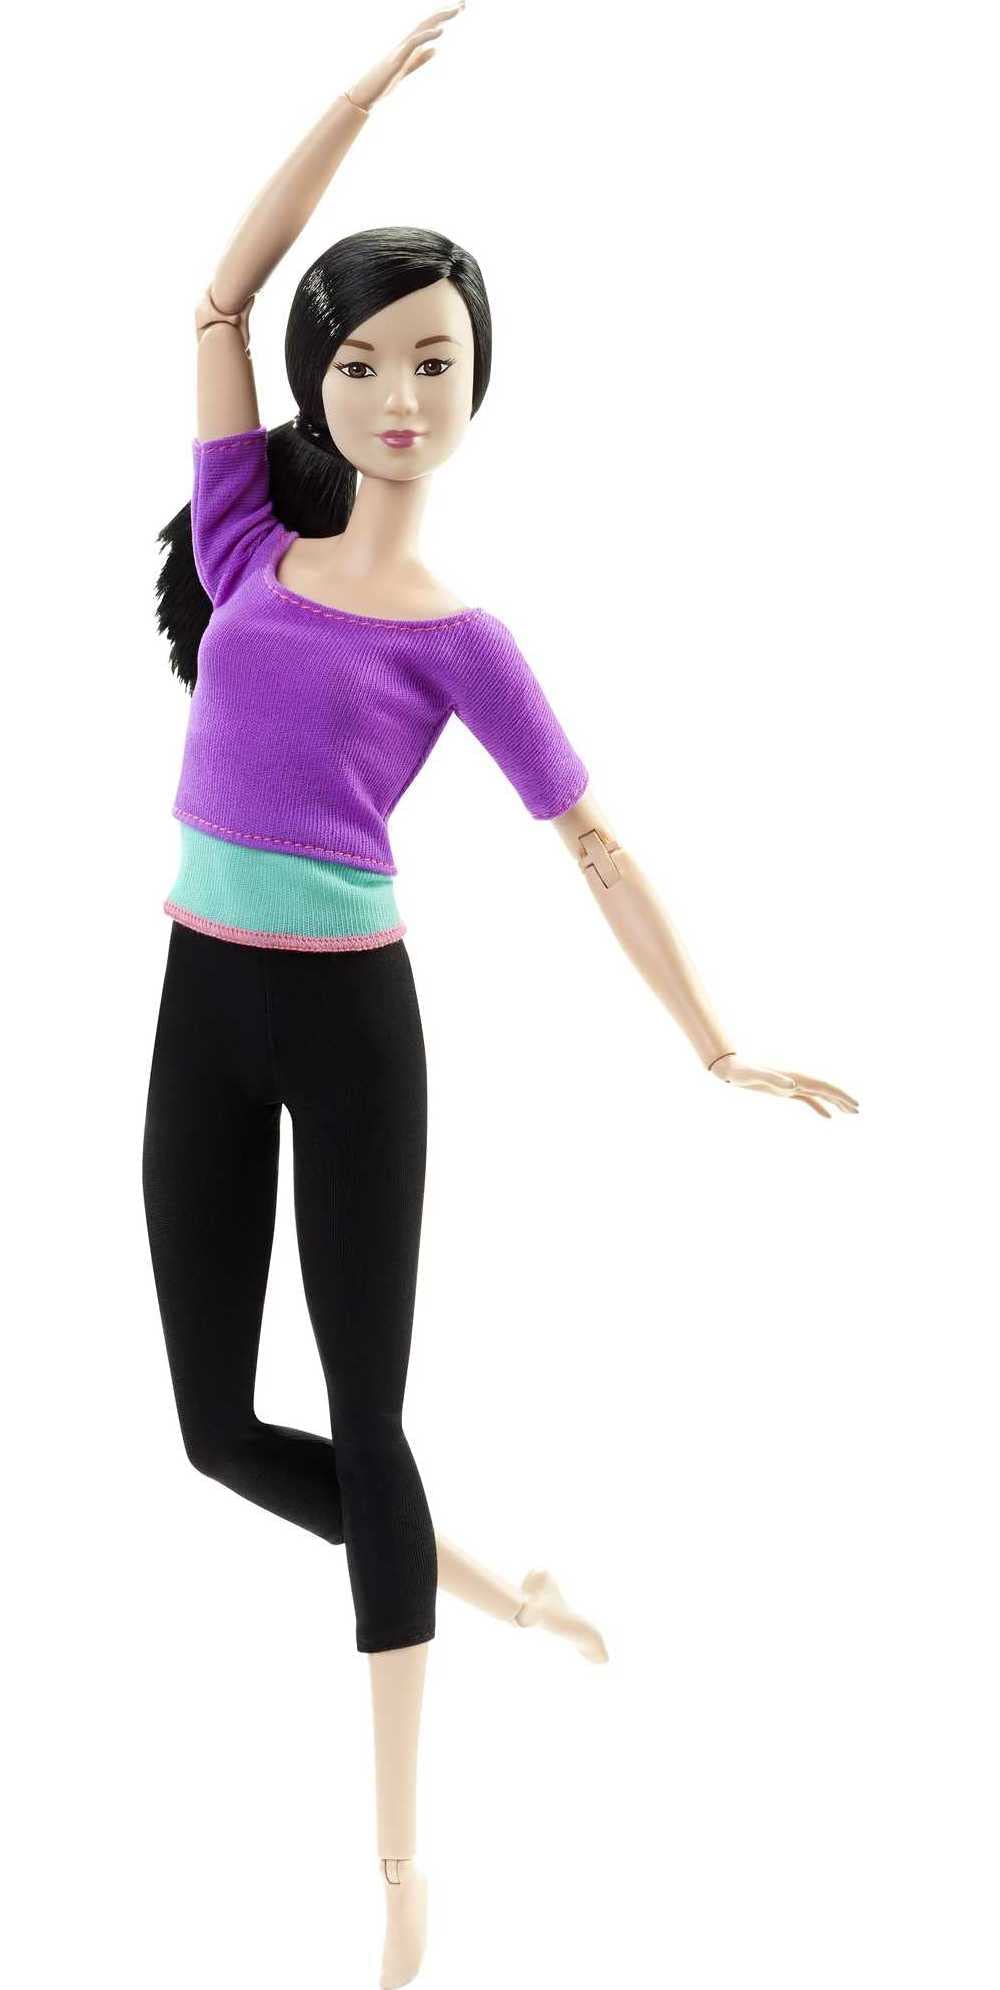 luxe  Barbie Made to Move Poupée Articulée Fitness Ultra Flexible Brune avec Haut Violet Et 22 Points D´Articulations, Jouet pour Enfant, Dhl84 Exclusivité sur Amazon nDPVU01v4 frais